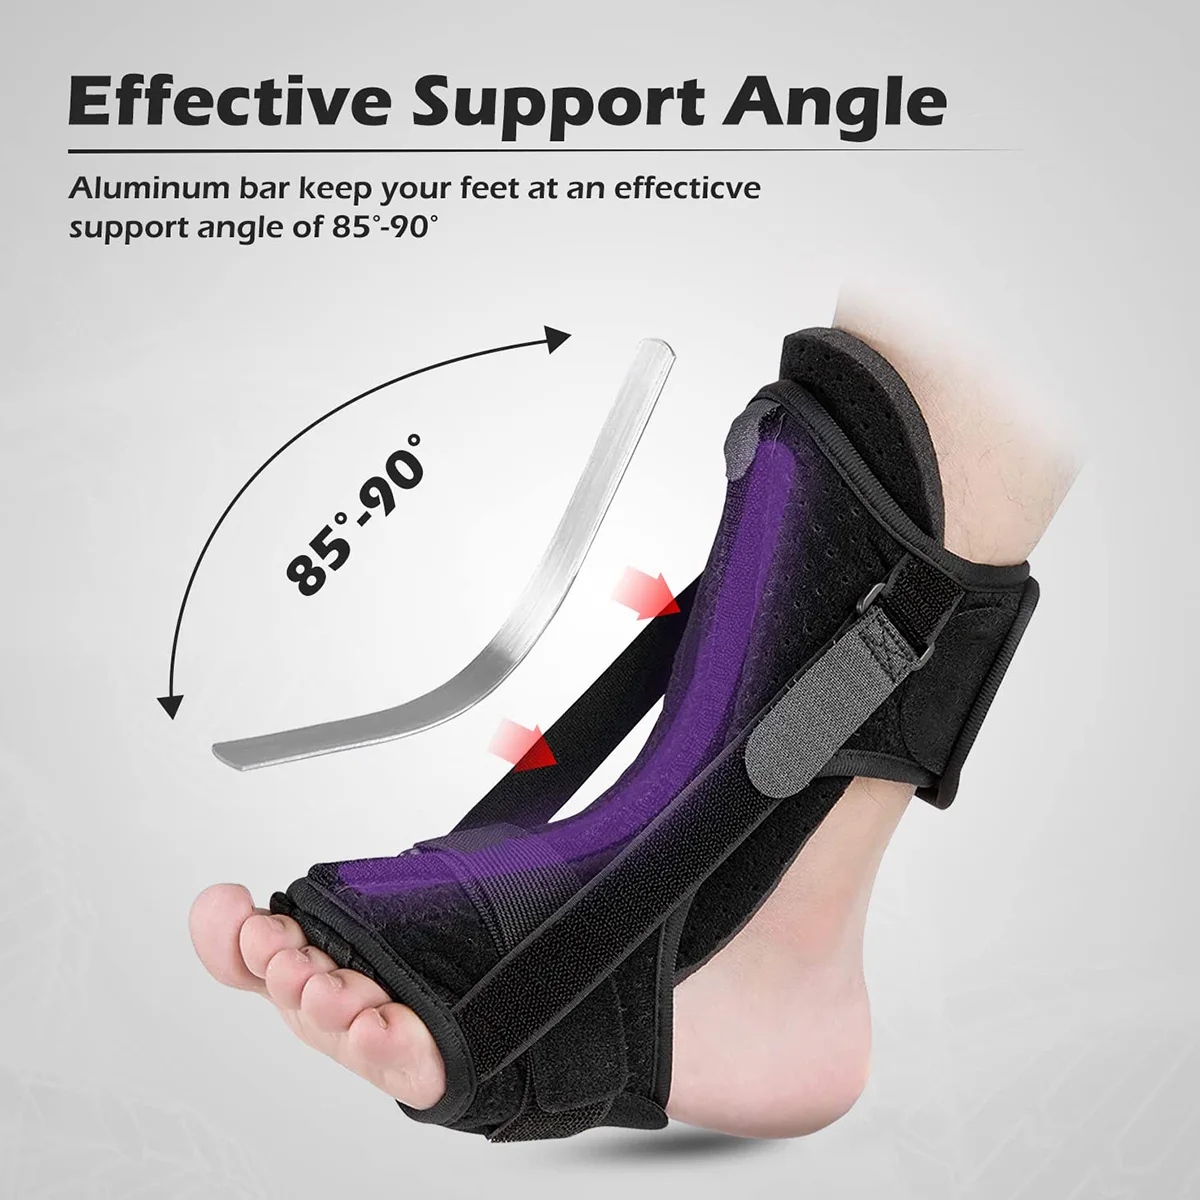 Adjustable Plantar Fasciitis Foot Drop Orthotic Brace Rehabilitation Fixed Foot Rest Socks Breathable Night Splint Easing Pains